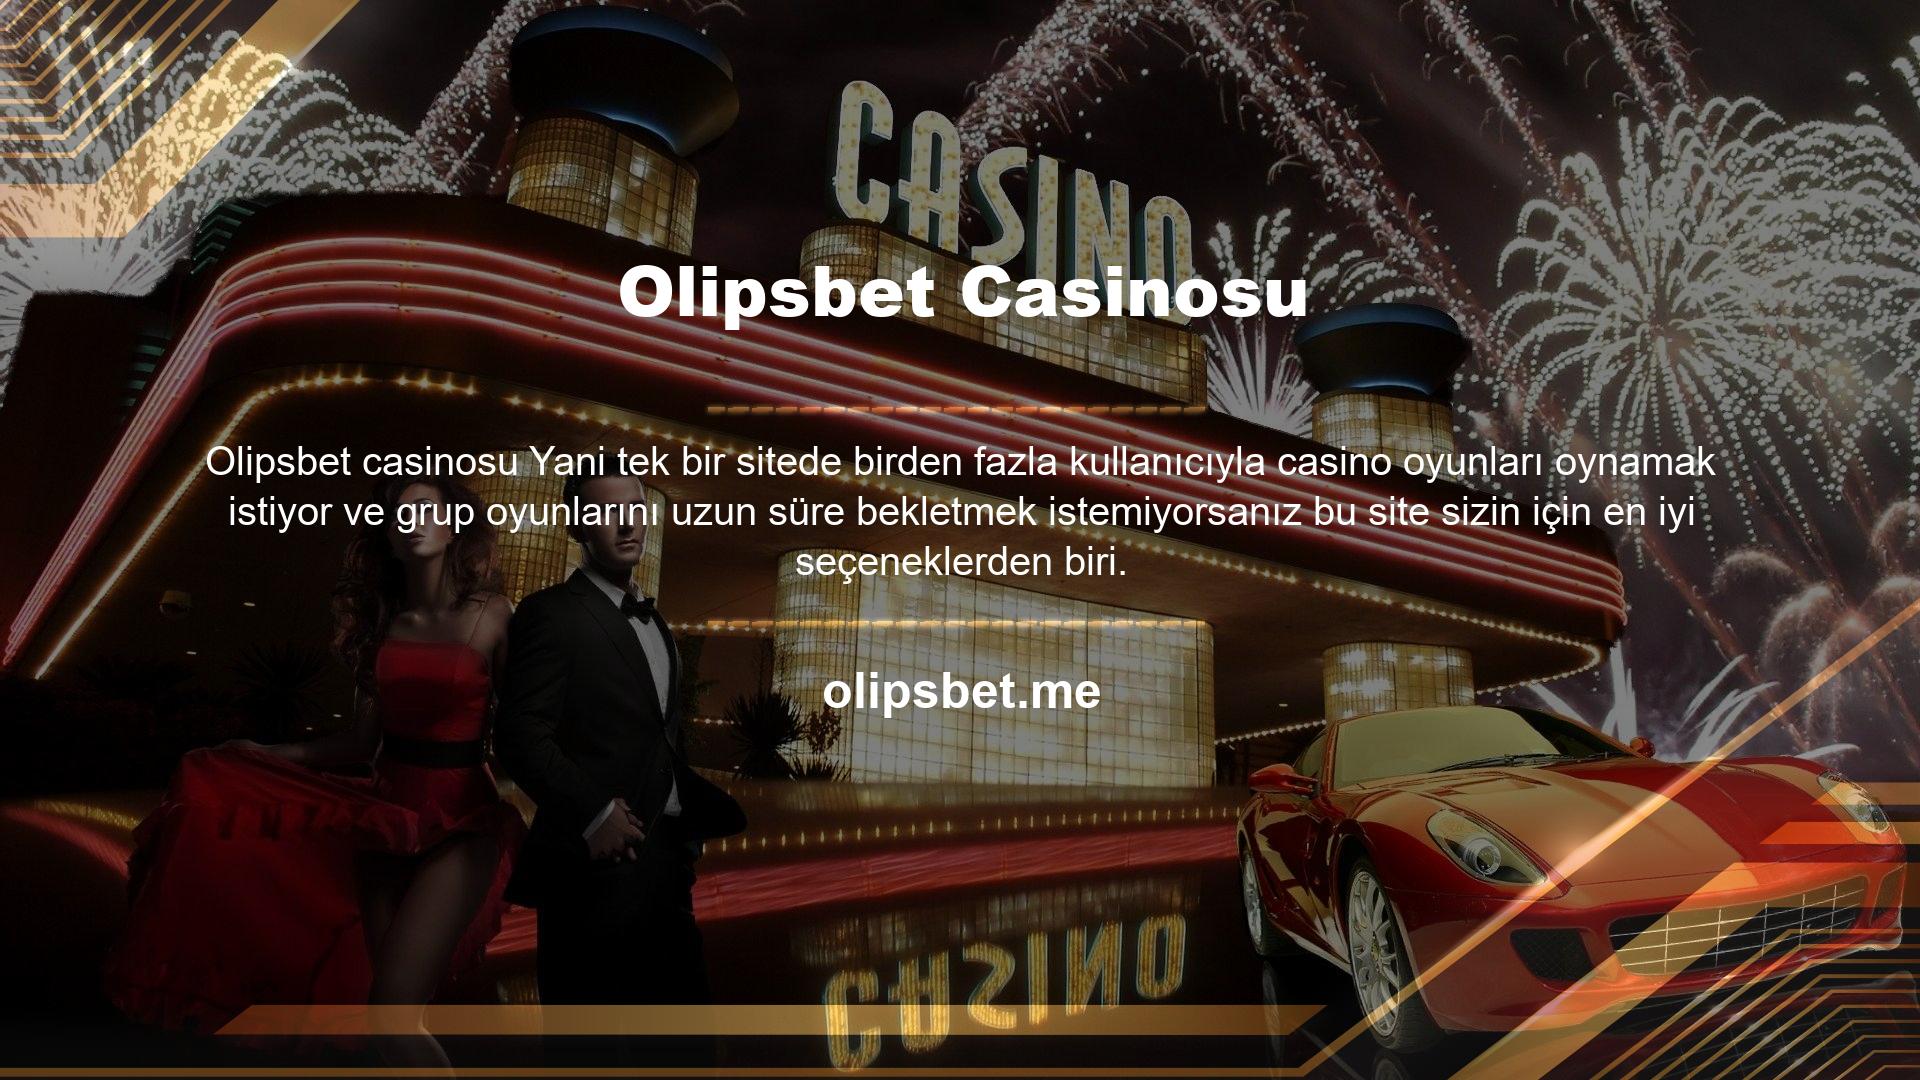 Ayrıca kullanıcılara çok çeşitli turnuvalar sunan Olipsbet casinosu web sitesinden bahsetmekte fayda var bu yüzden bahis sitesi seçerken bir sitedeki turnuva sayısına dikkat ederseniz o zaman bu site sizin için oldukça makul bir sitedir